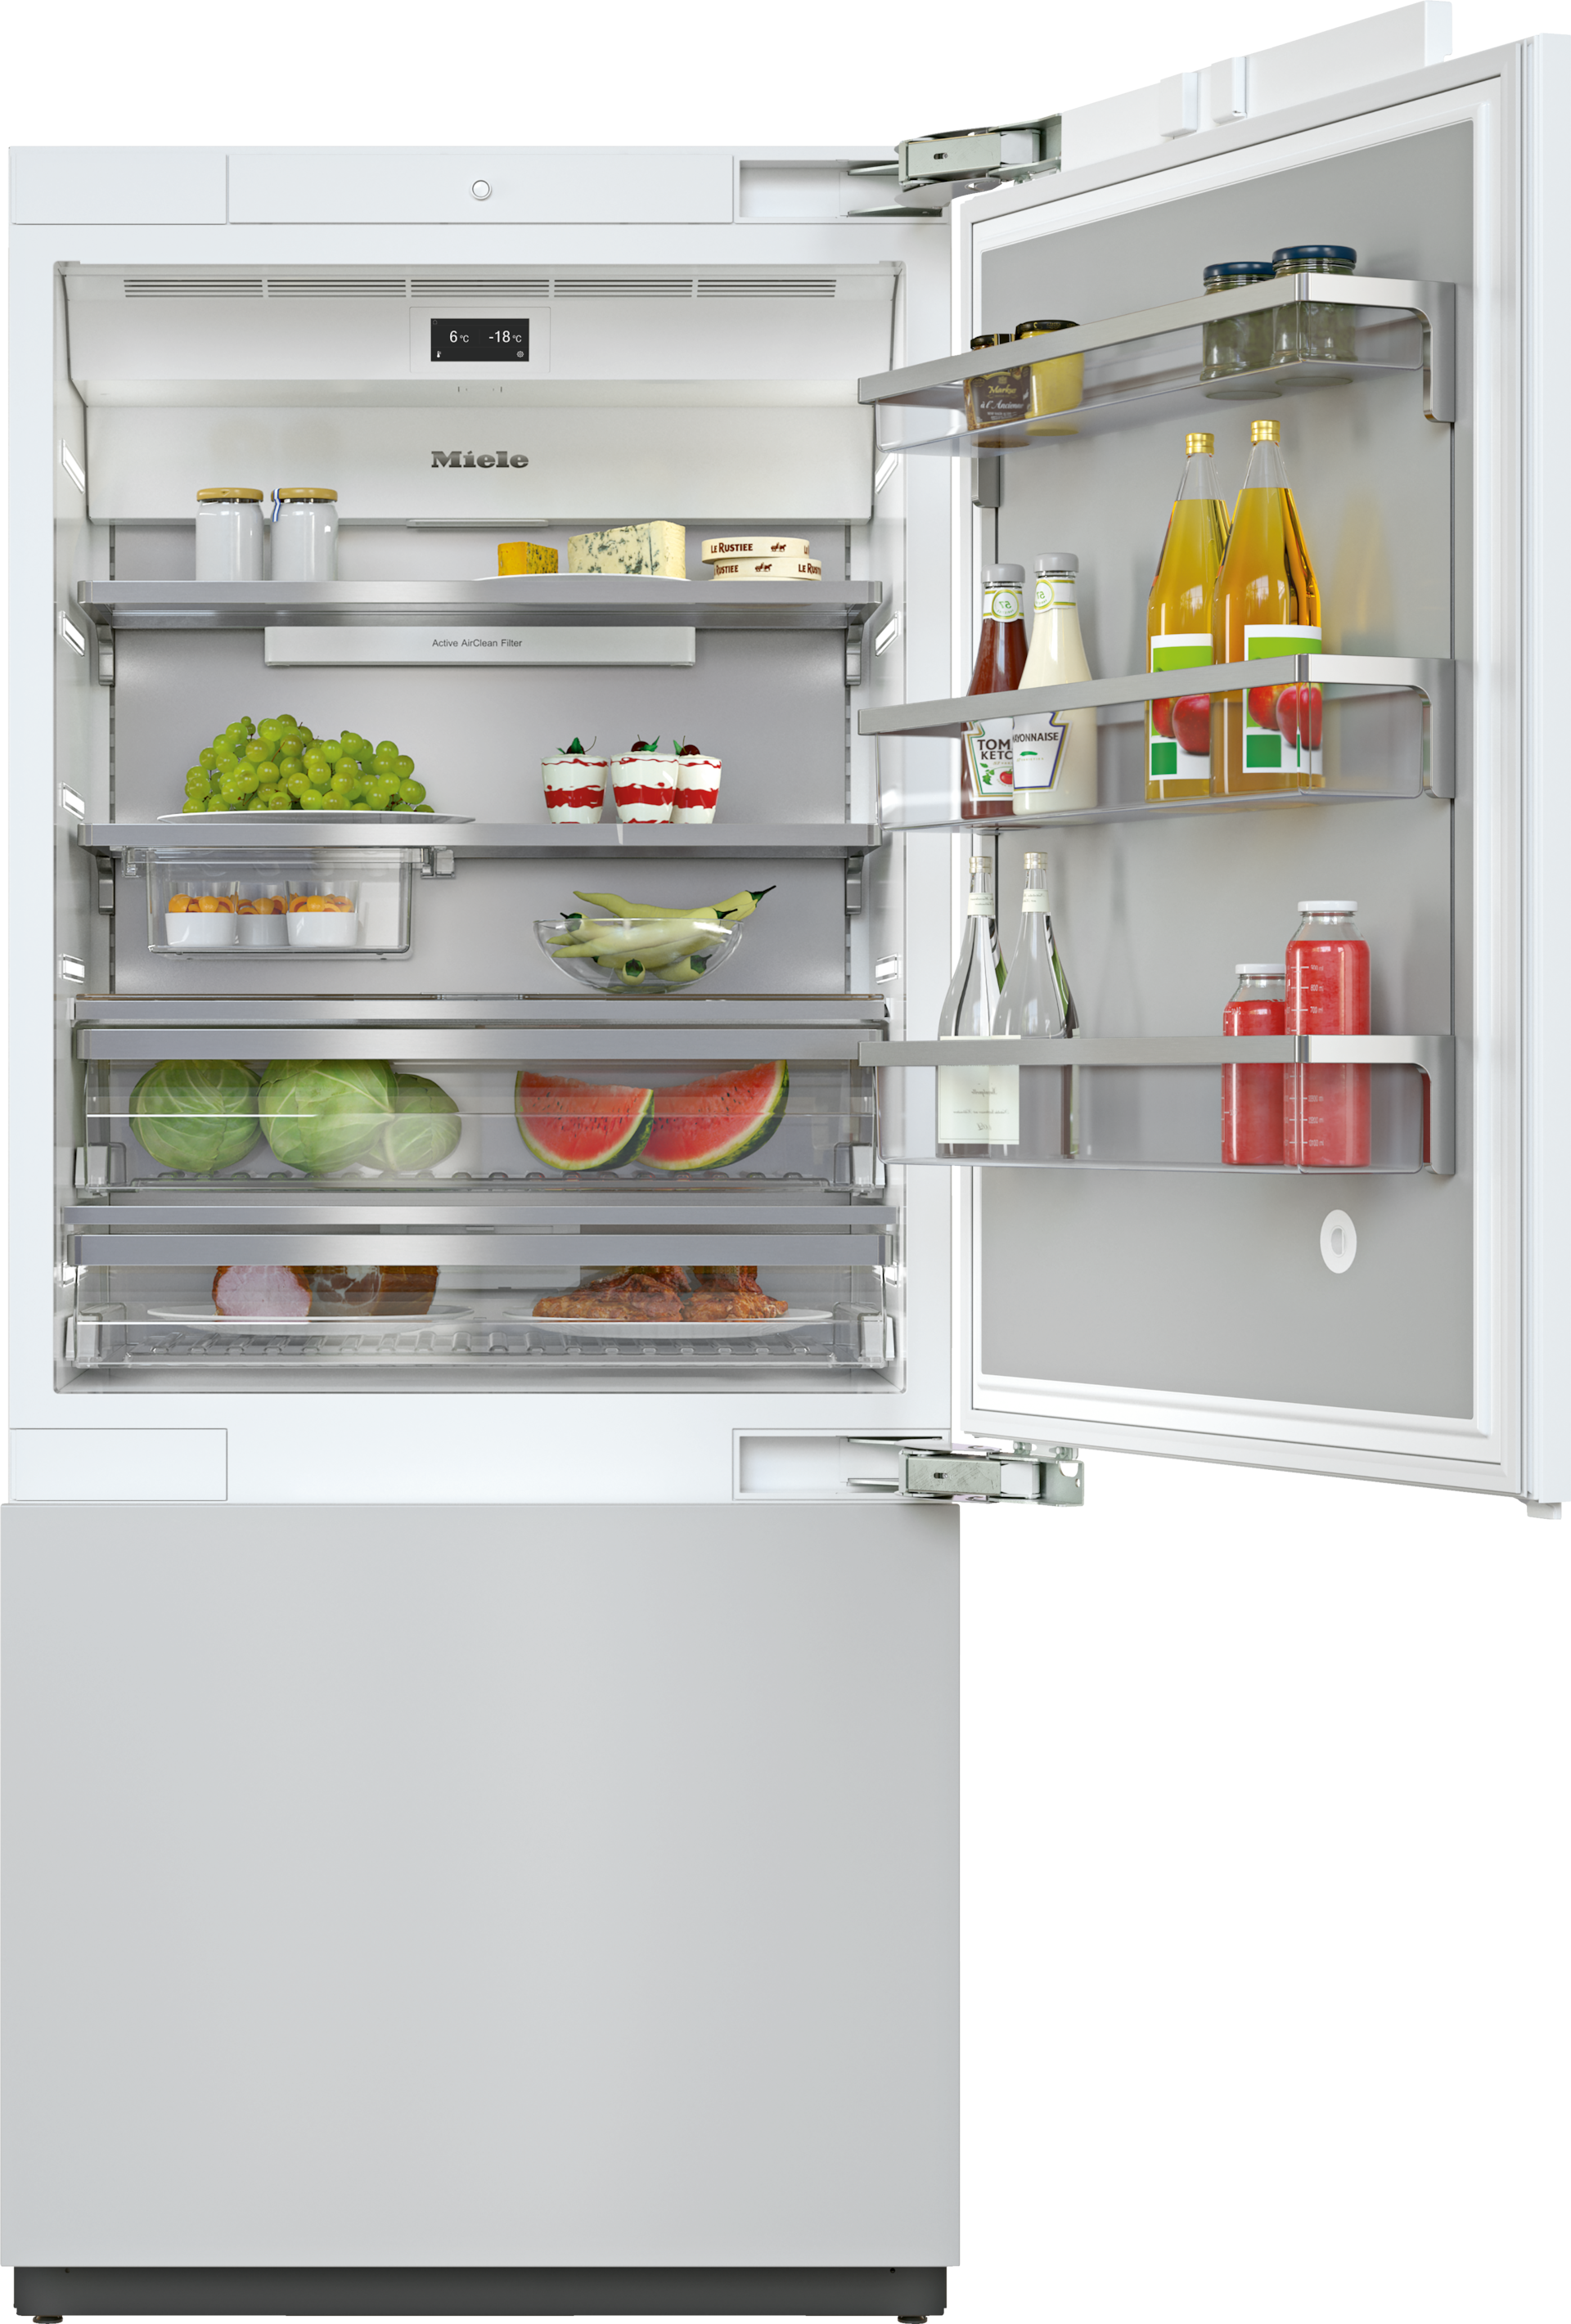 Refrigeration - KF 2902 Vi - 1